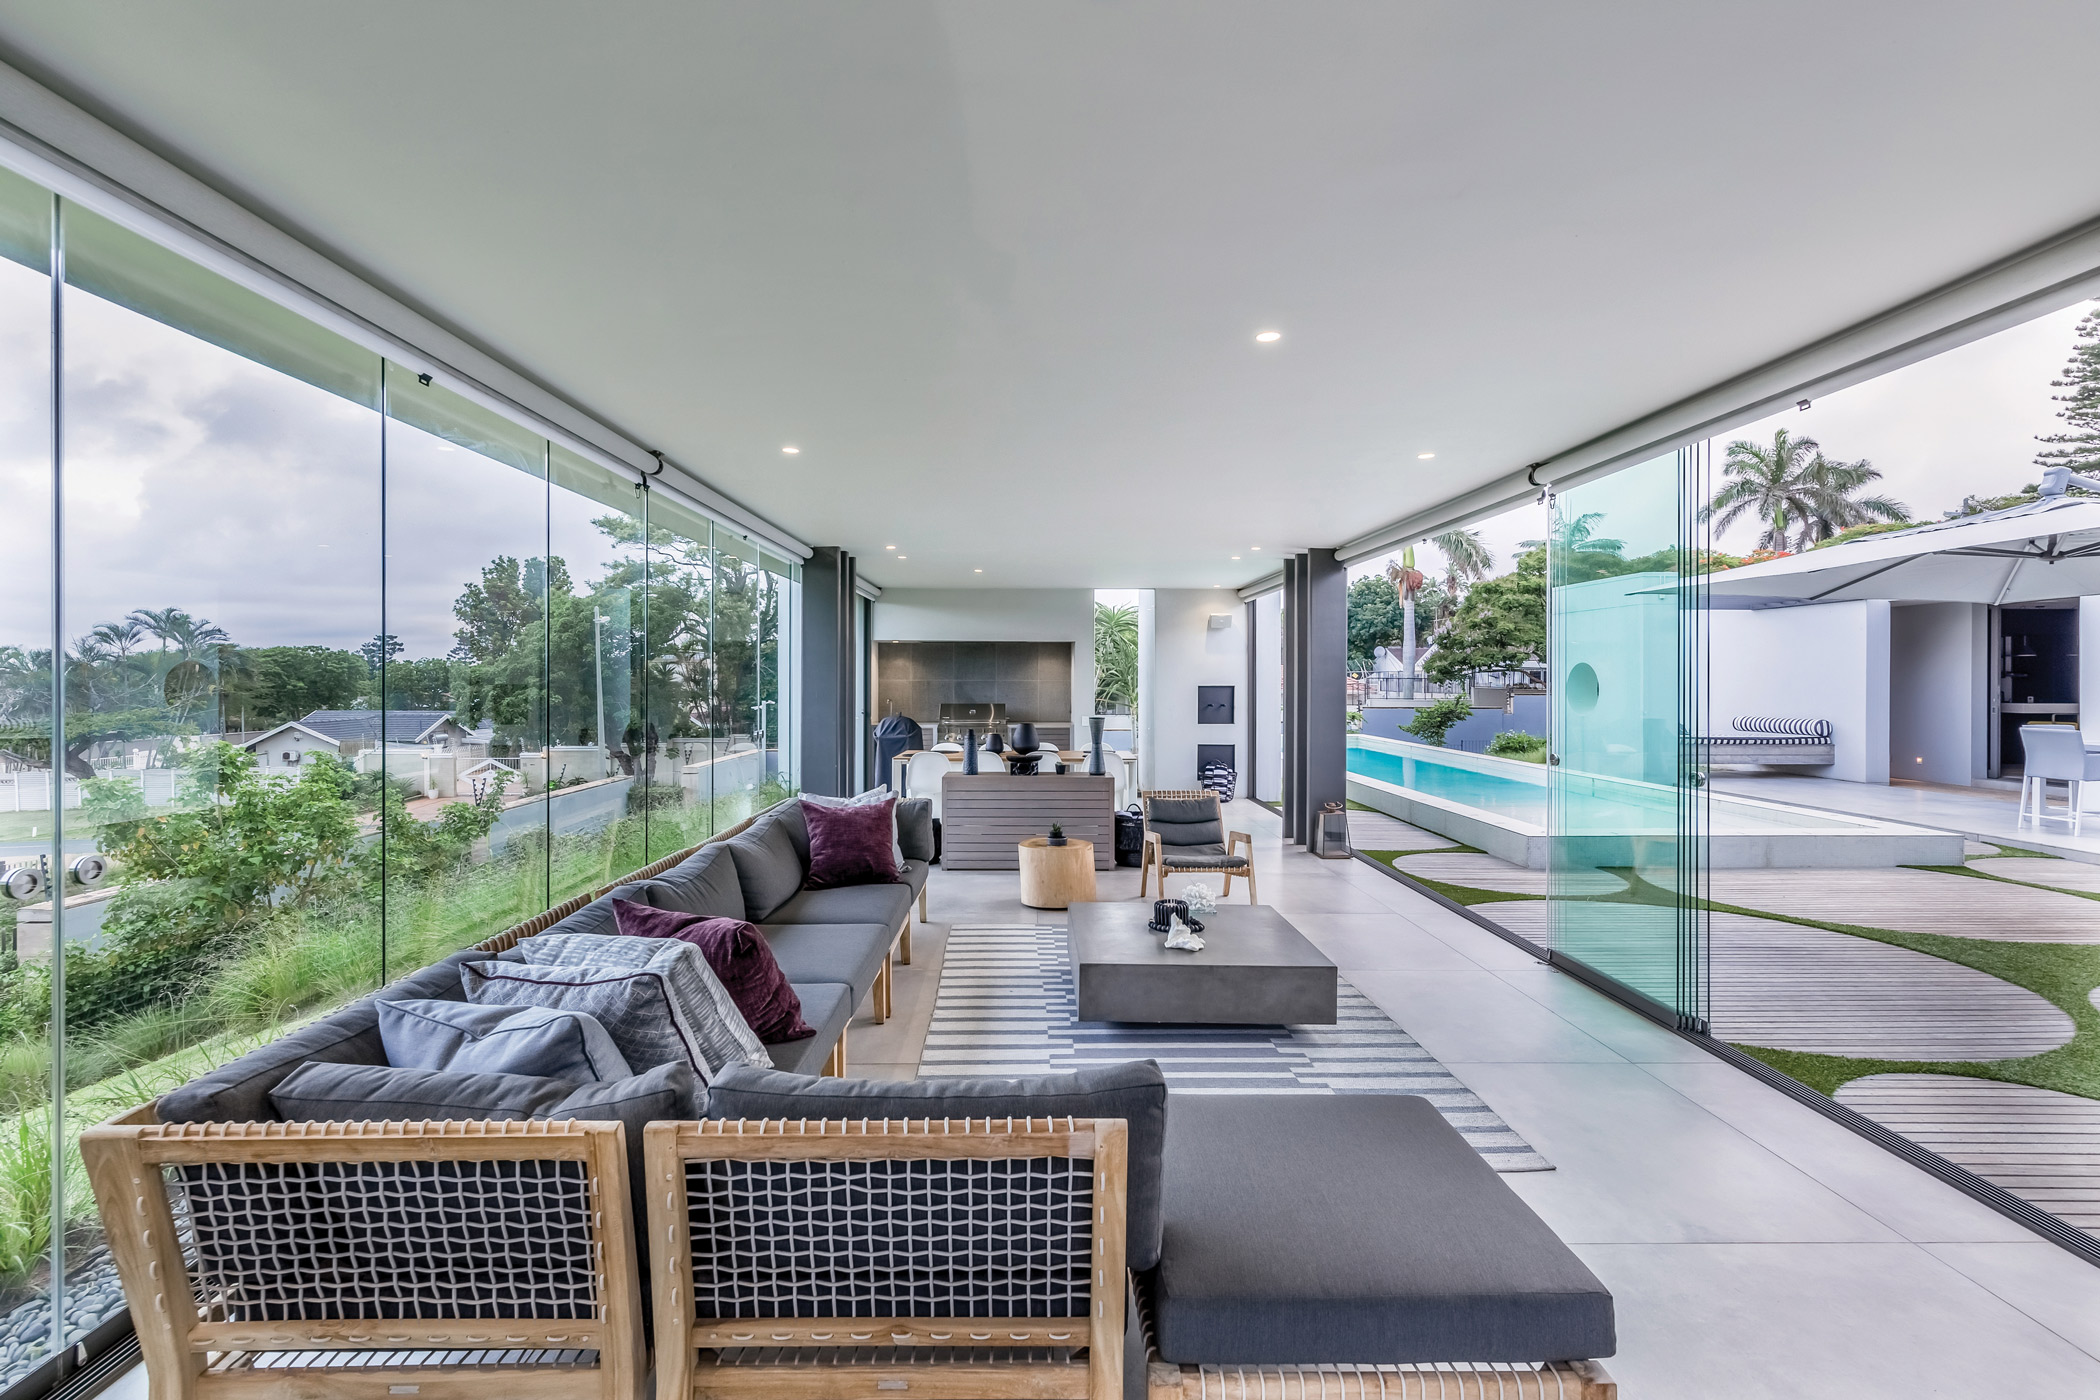 Luxoriöses Poolhaus mit Glasschiebetüren von Sunflex